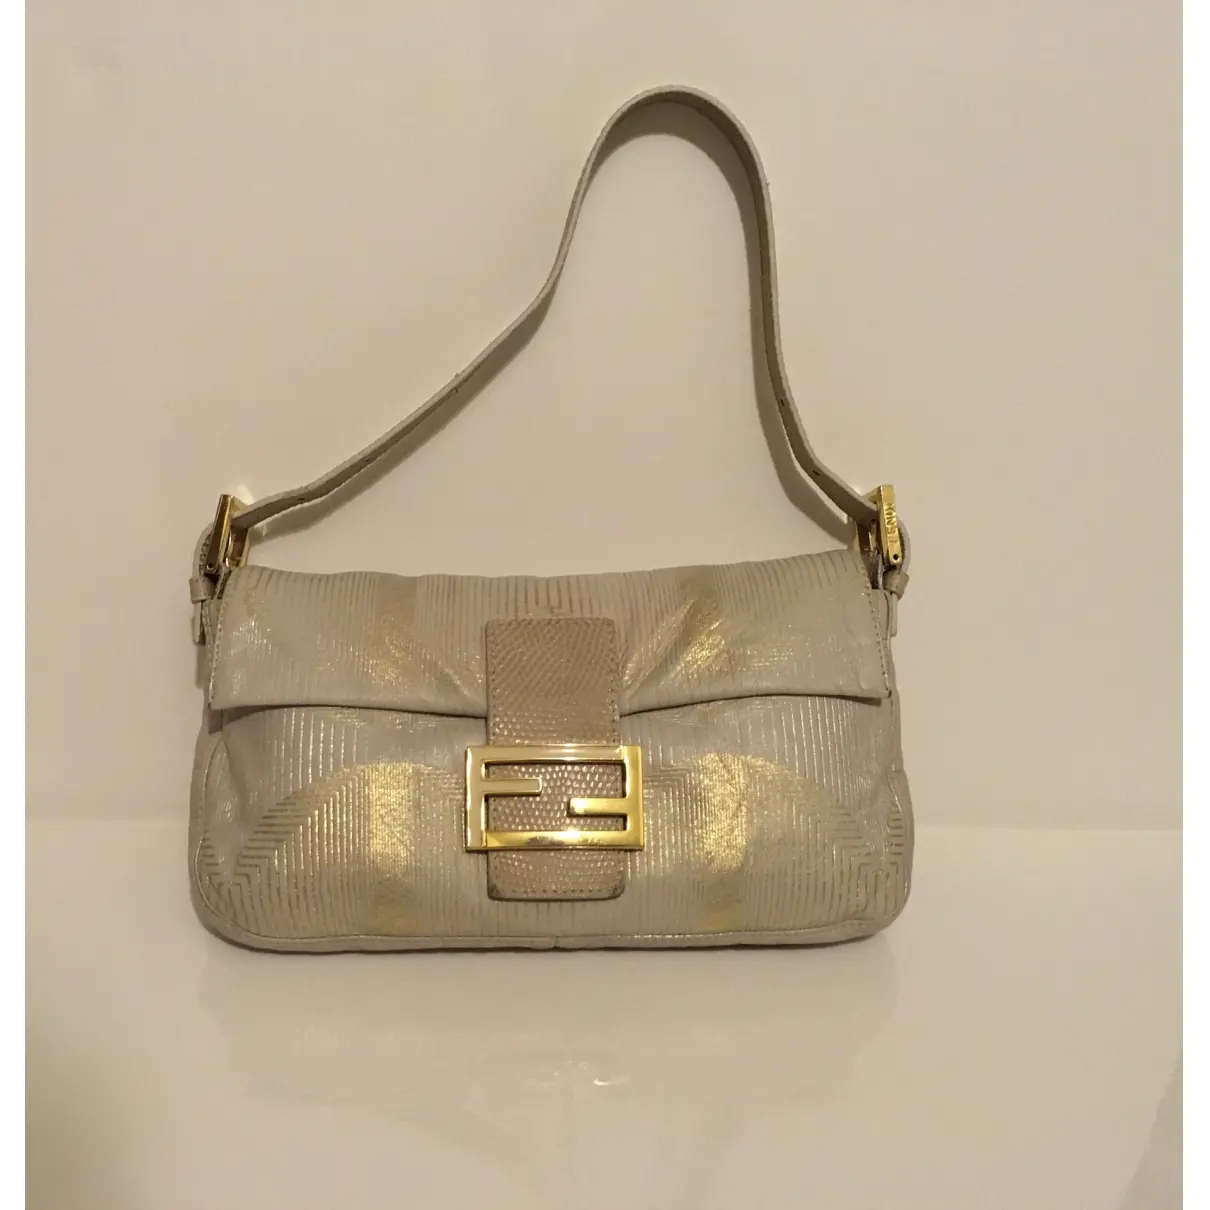 Buy Fendi Baguette leather handbag online - Vintage